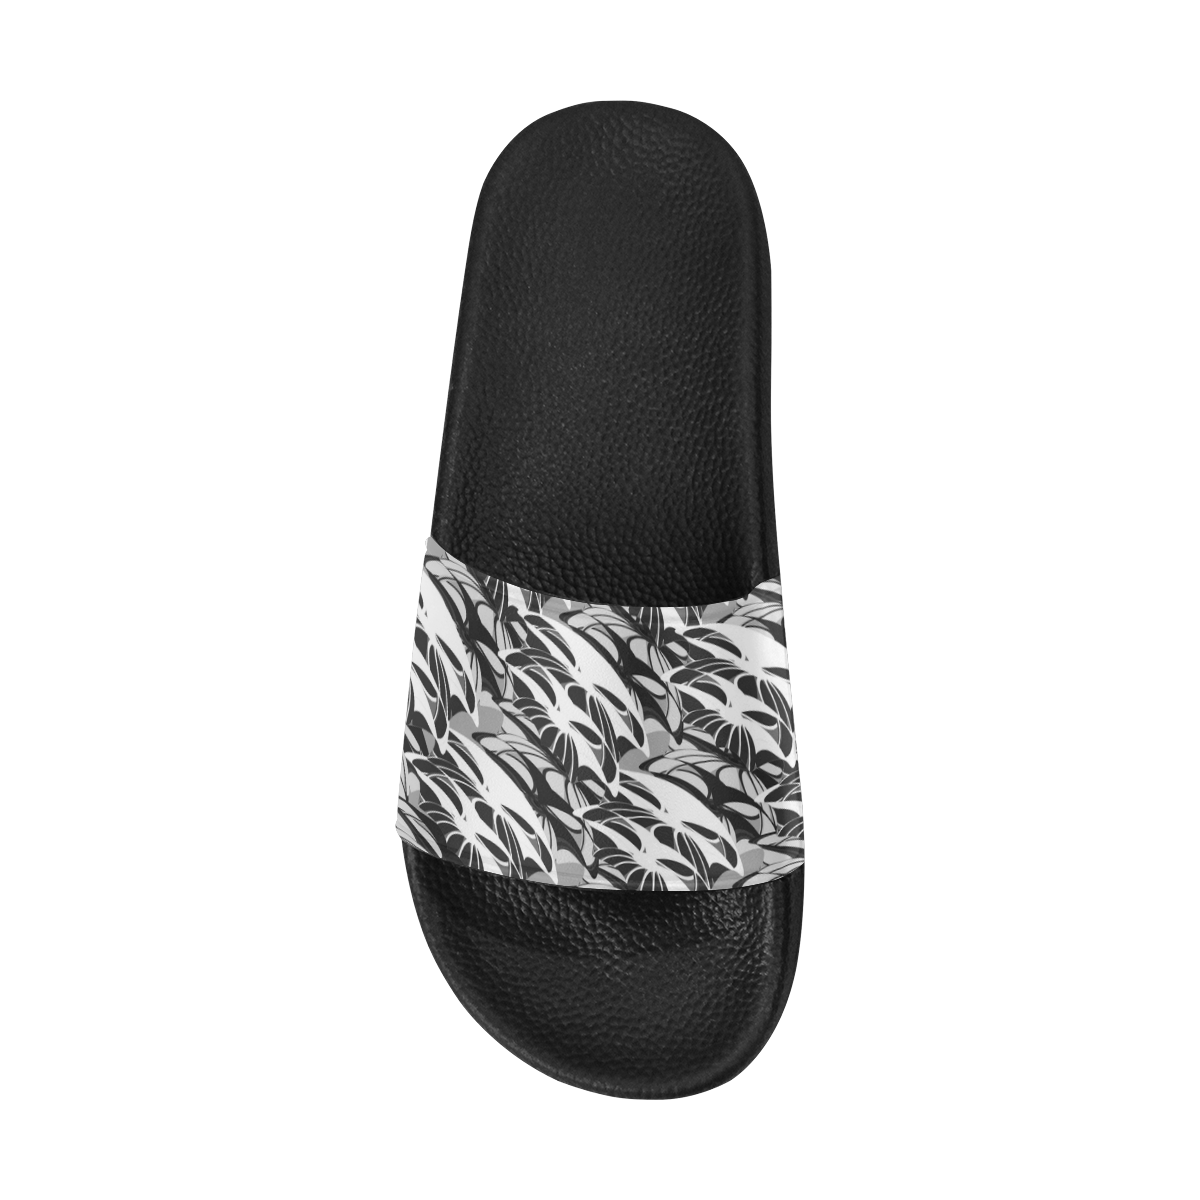 Alien Troops - Black & White Women's Slide Sandals (Model 057)